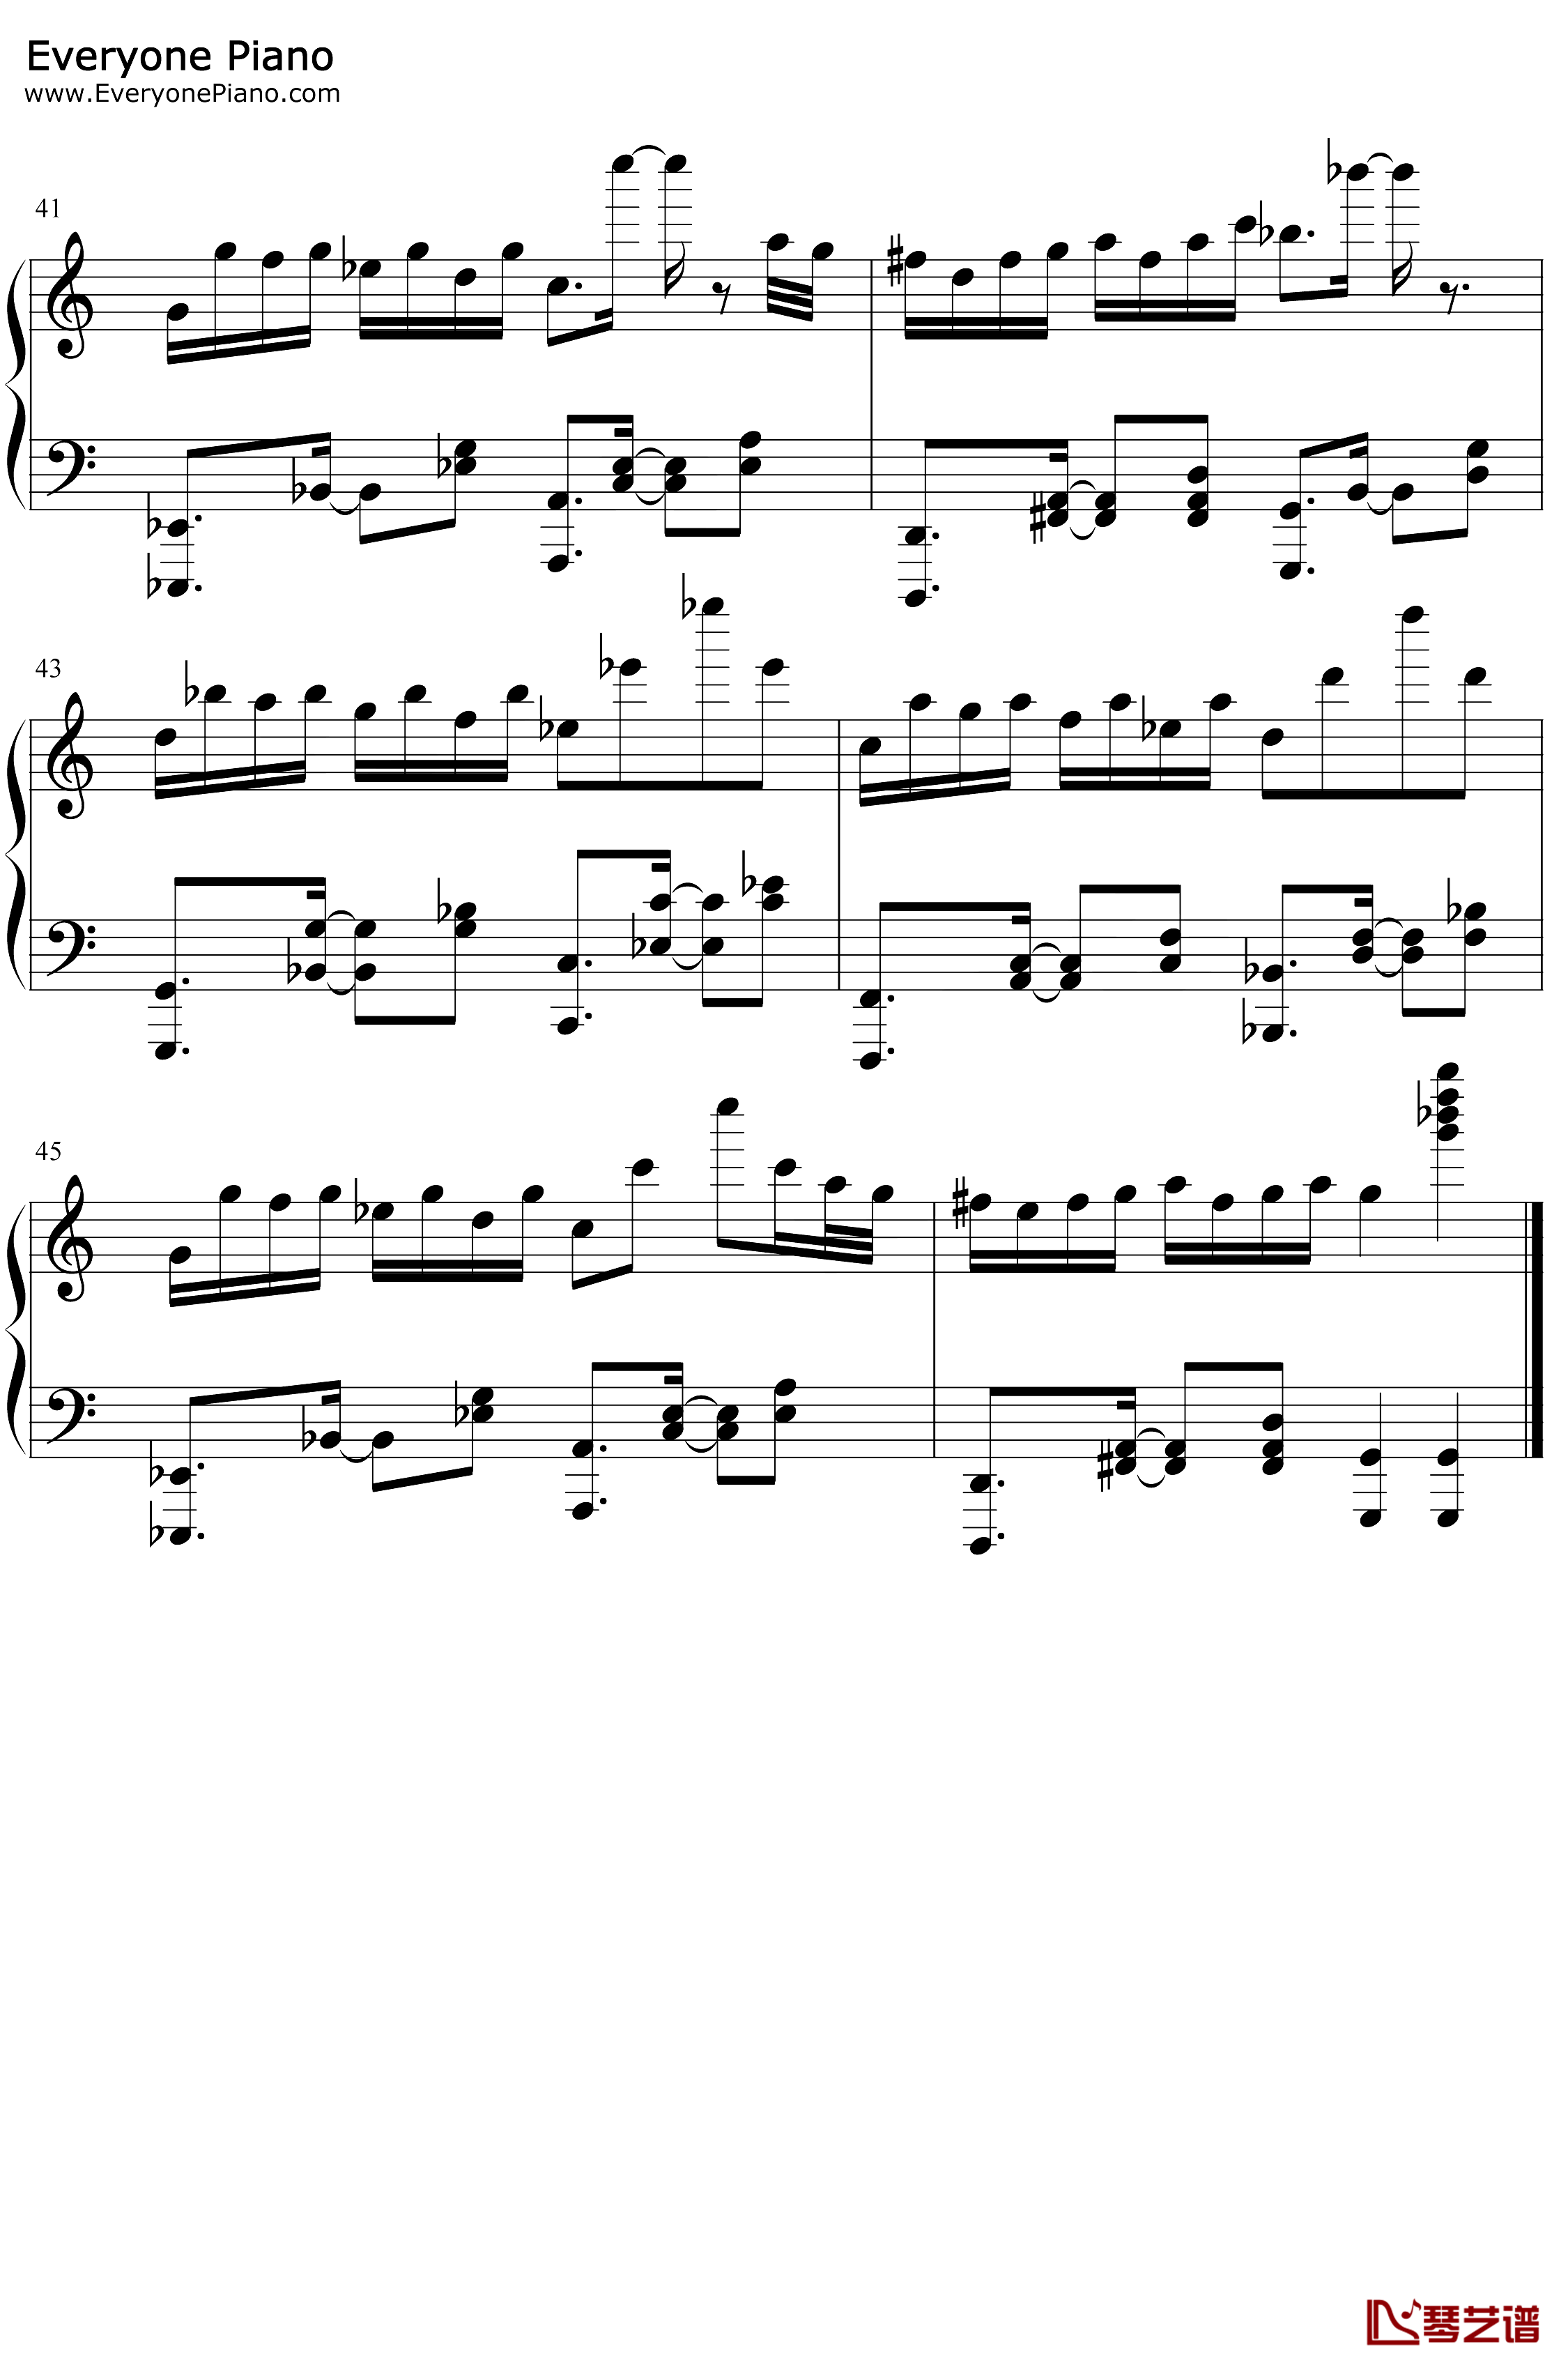 帕萨卡利亚克罗地亚变奏钢琴谱-Handel Mrvica-帕萨卡利亚克罗地亚变奏5